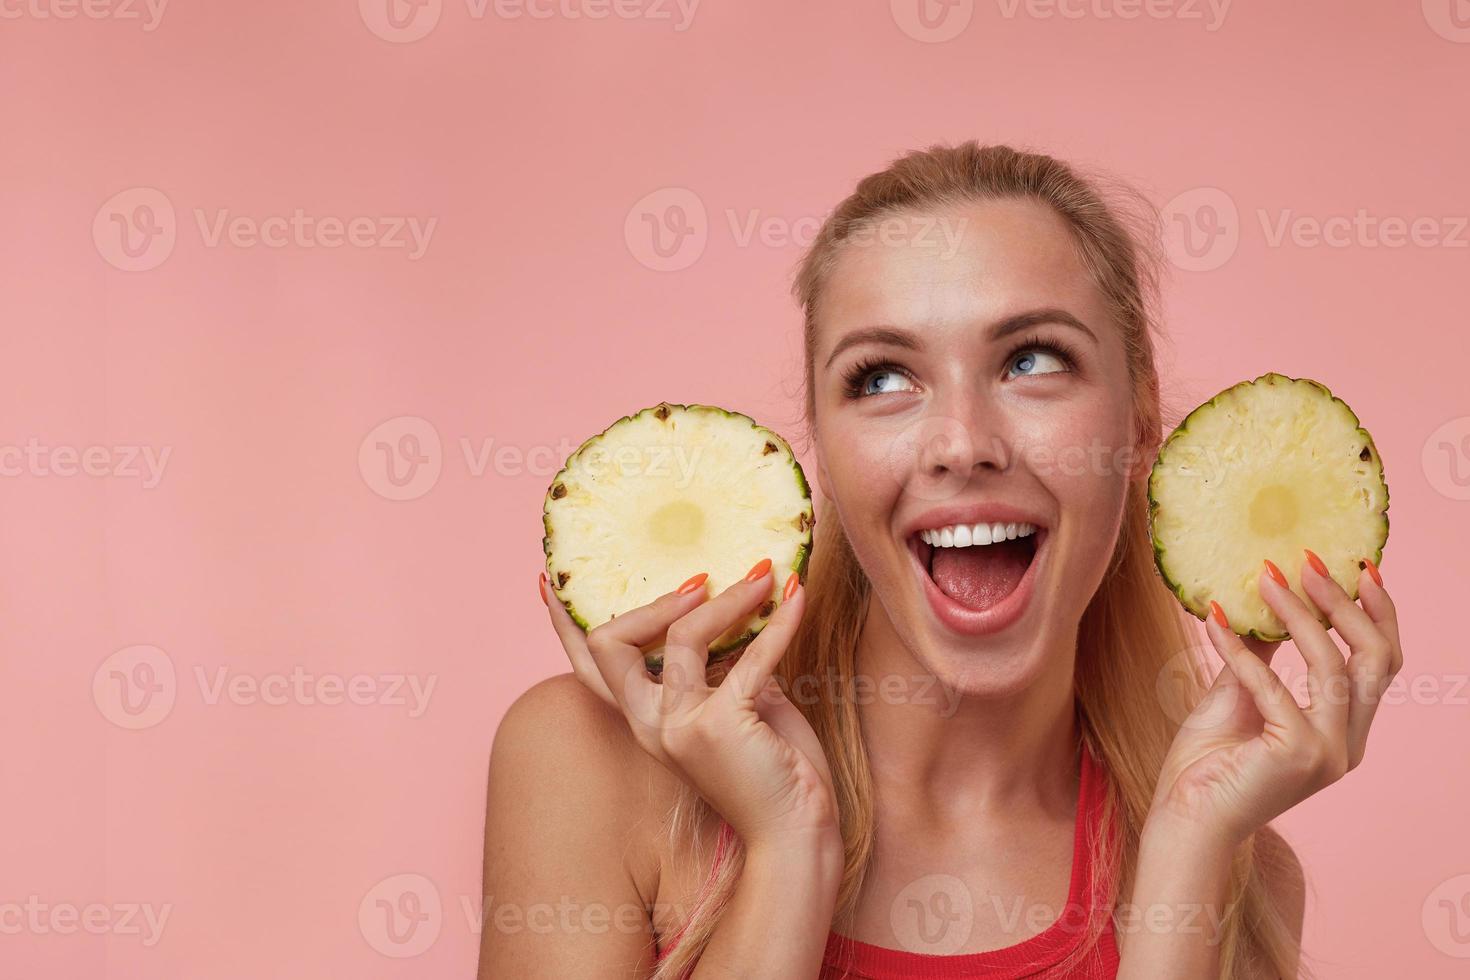 felice giovane donna attraente con trucco naturale e acconciatura casual guardando con gioia verso l'alto, divertendosi con anelli di ananas fresco, isolato su sfondo rosa foto